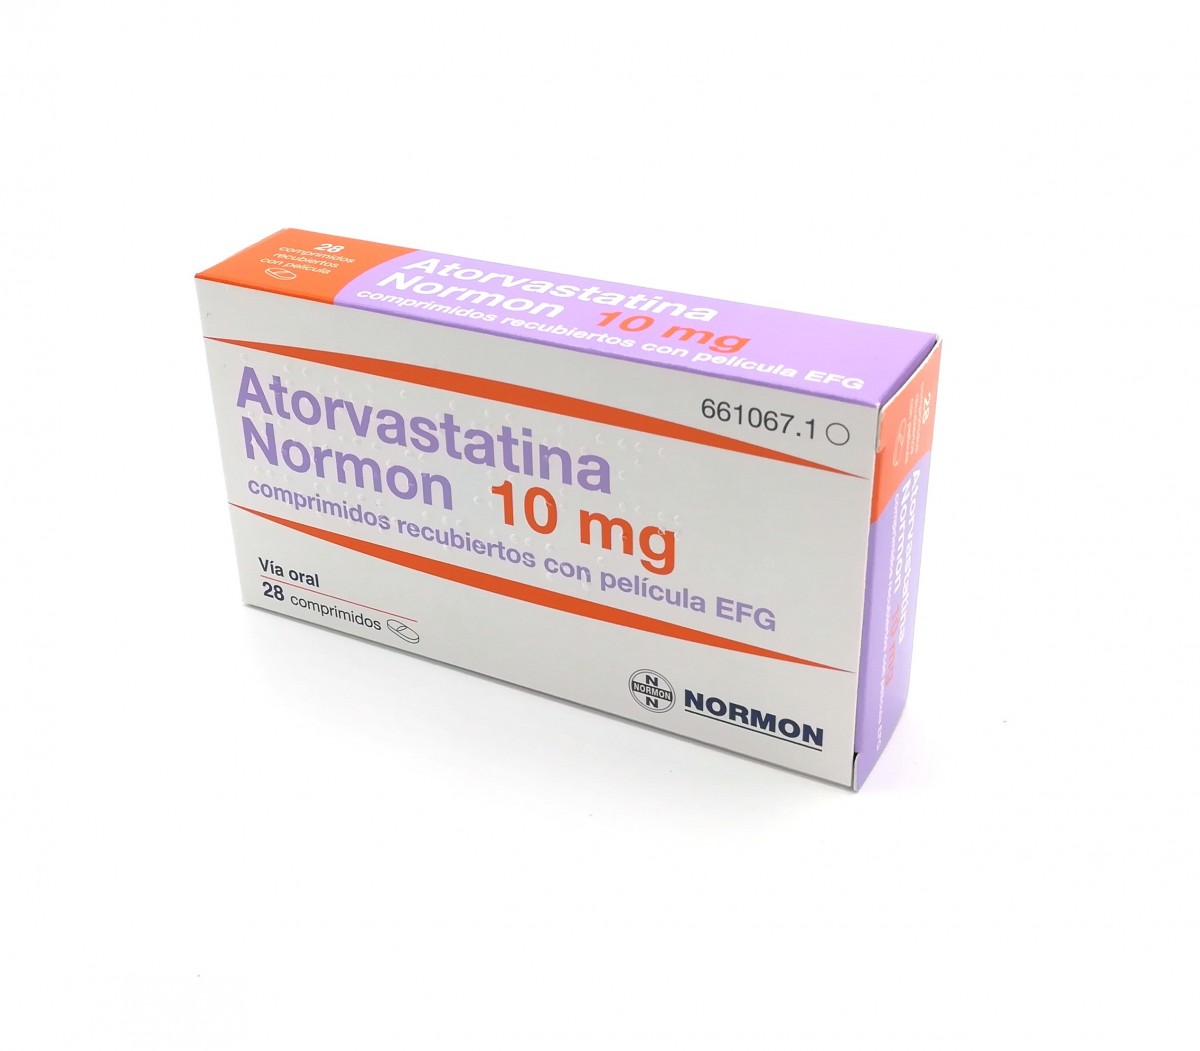 ATORVASTATINA NORMON 10 mg COMPRIMIDOS RECUBIERTOS CON PELICULA EFG , 500 comprimidos fotografía del envase.